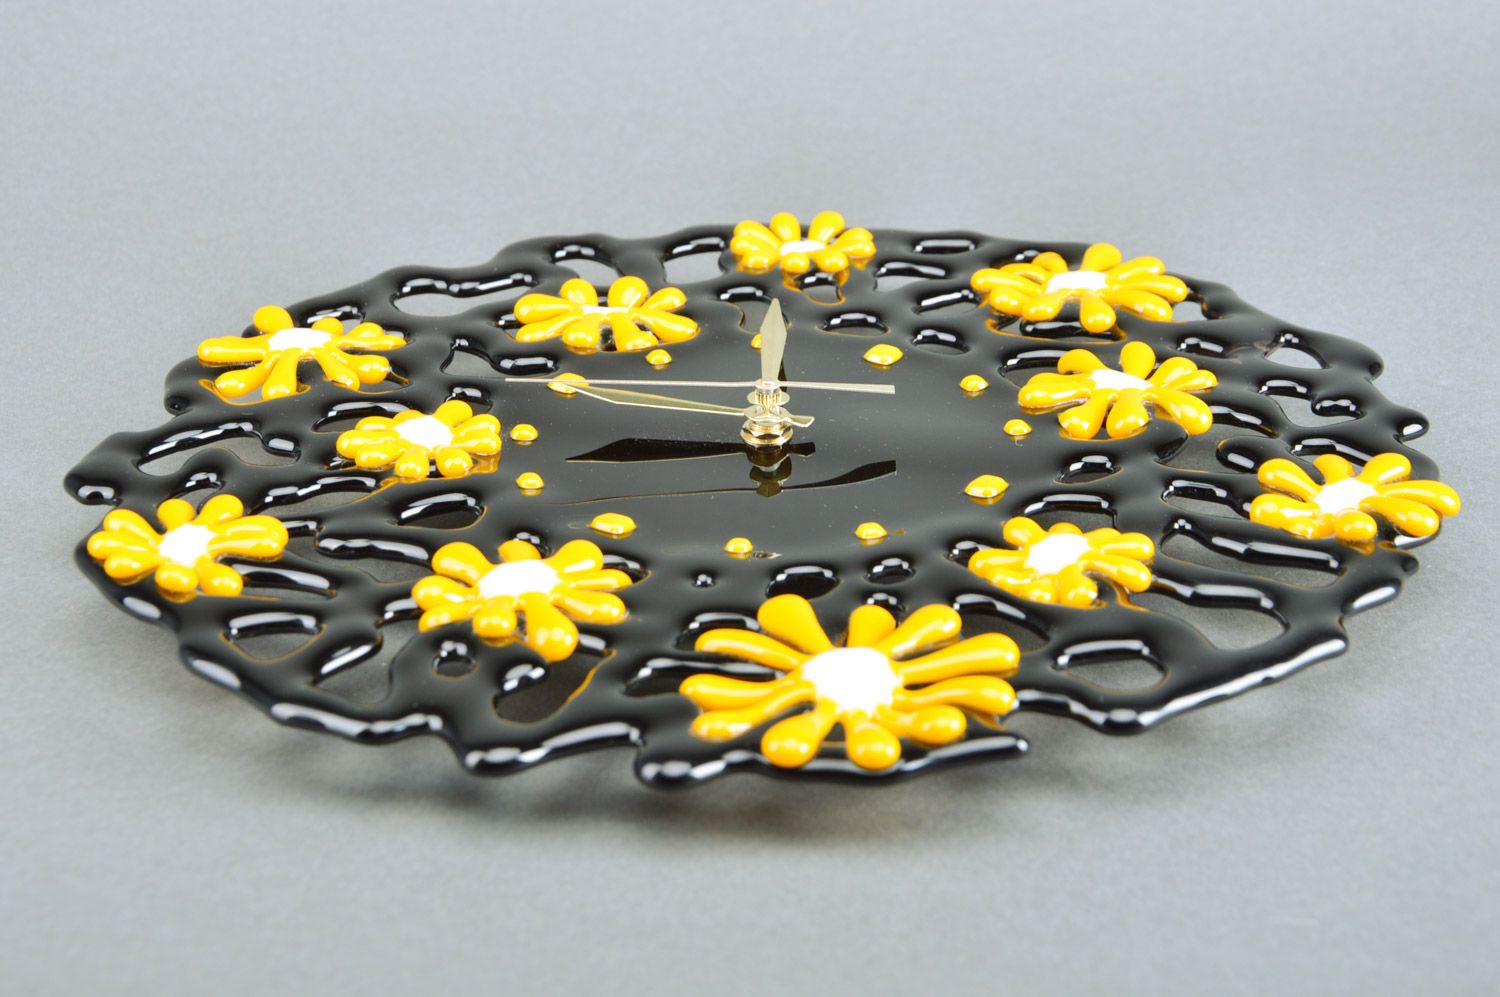 Часы из стекла фьюзинг черные в желтый цветочек круглые необычные ручная работа фото 5